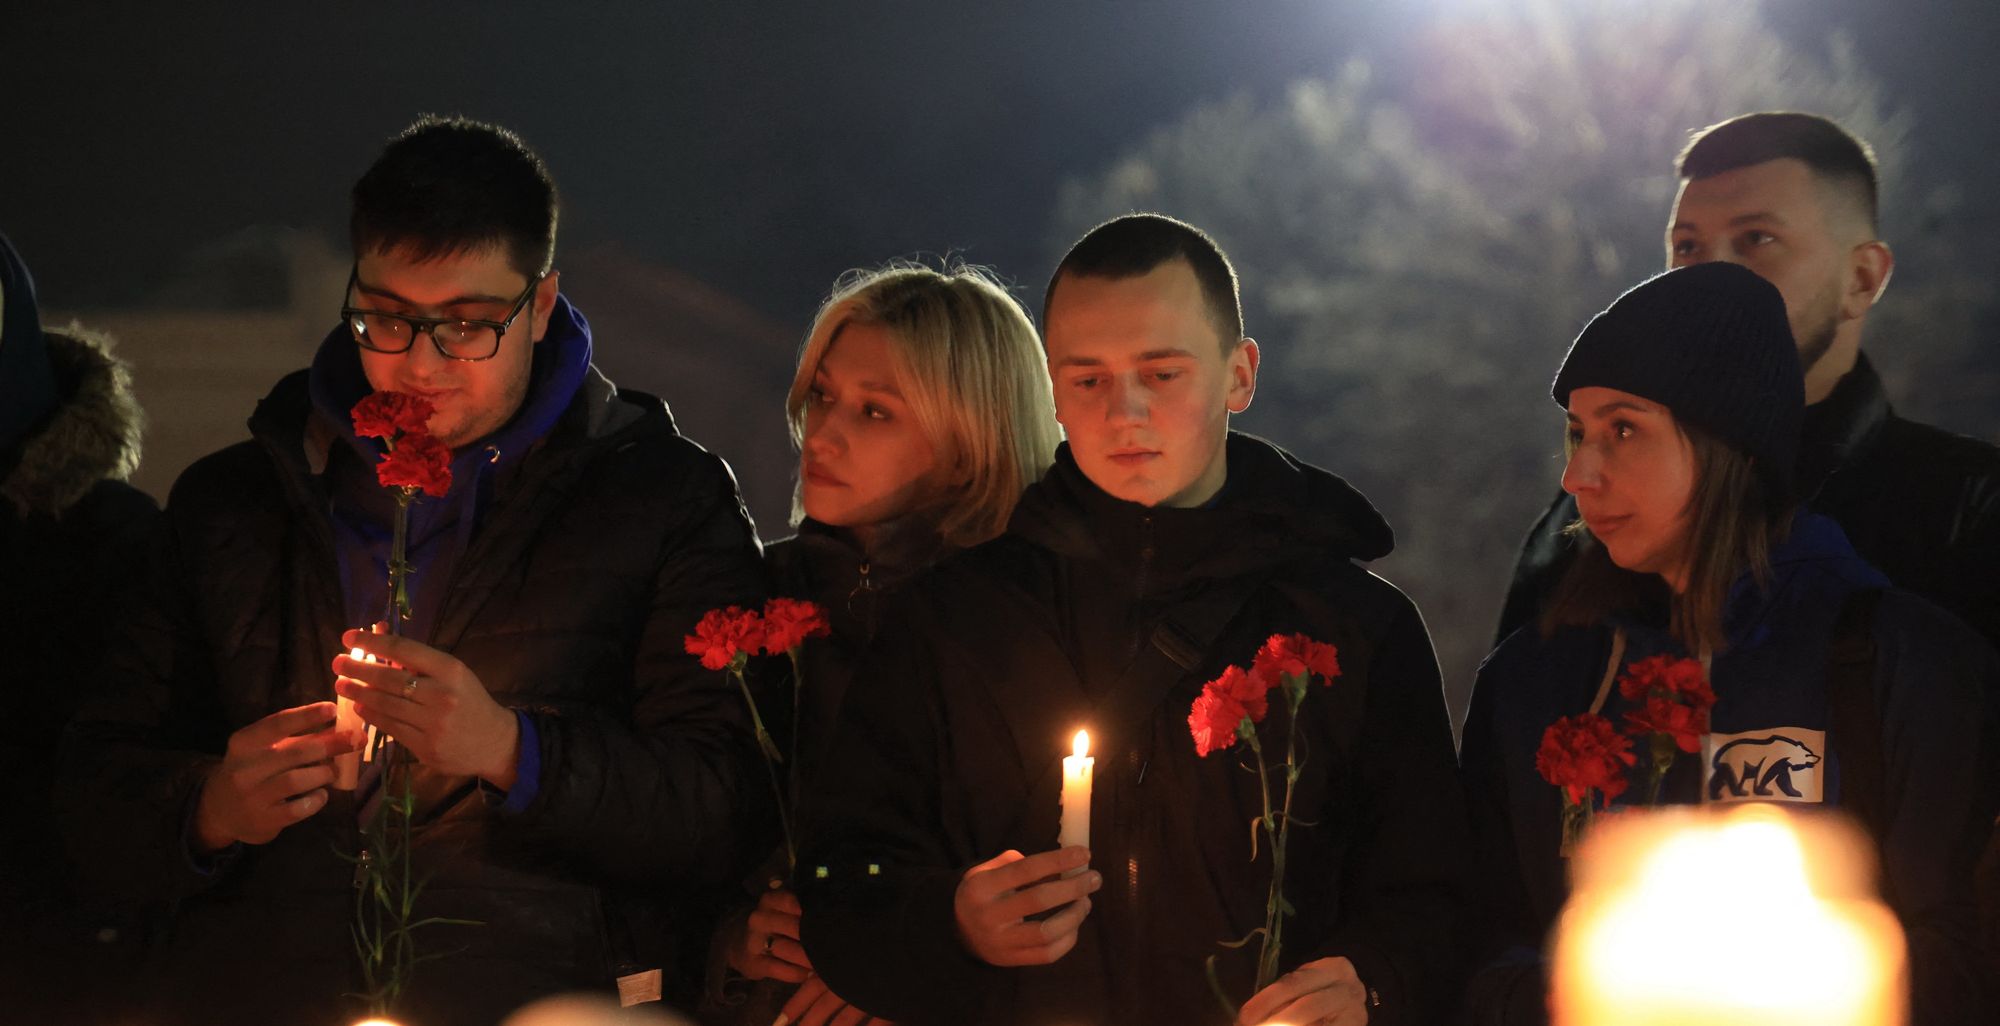 إضاءة الشموع في سيمفربول في شبه جزيرة القرم تكريماً لضحايا الحادث الإرهابي الذي وقع في موسكو الجمعة